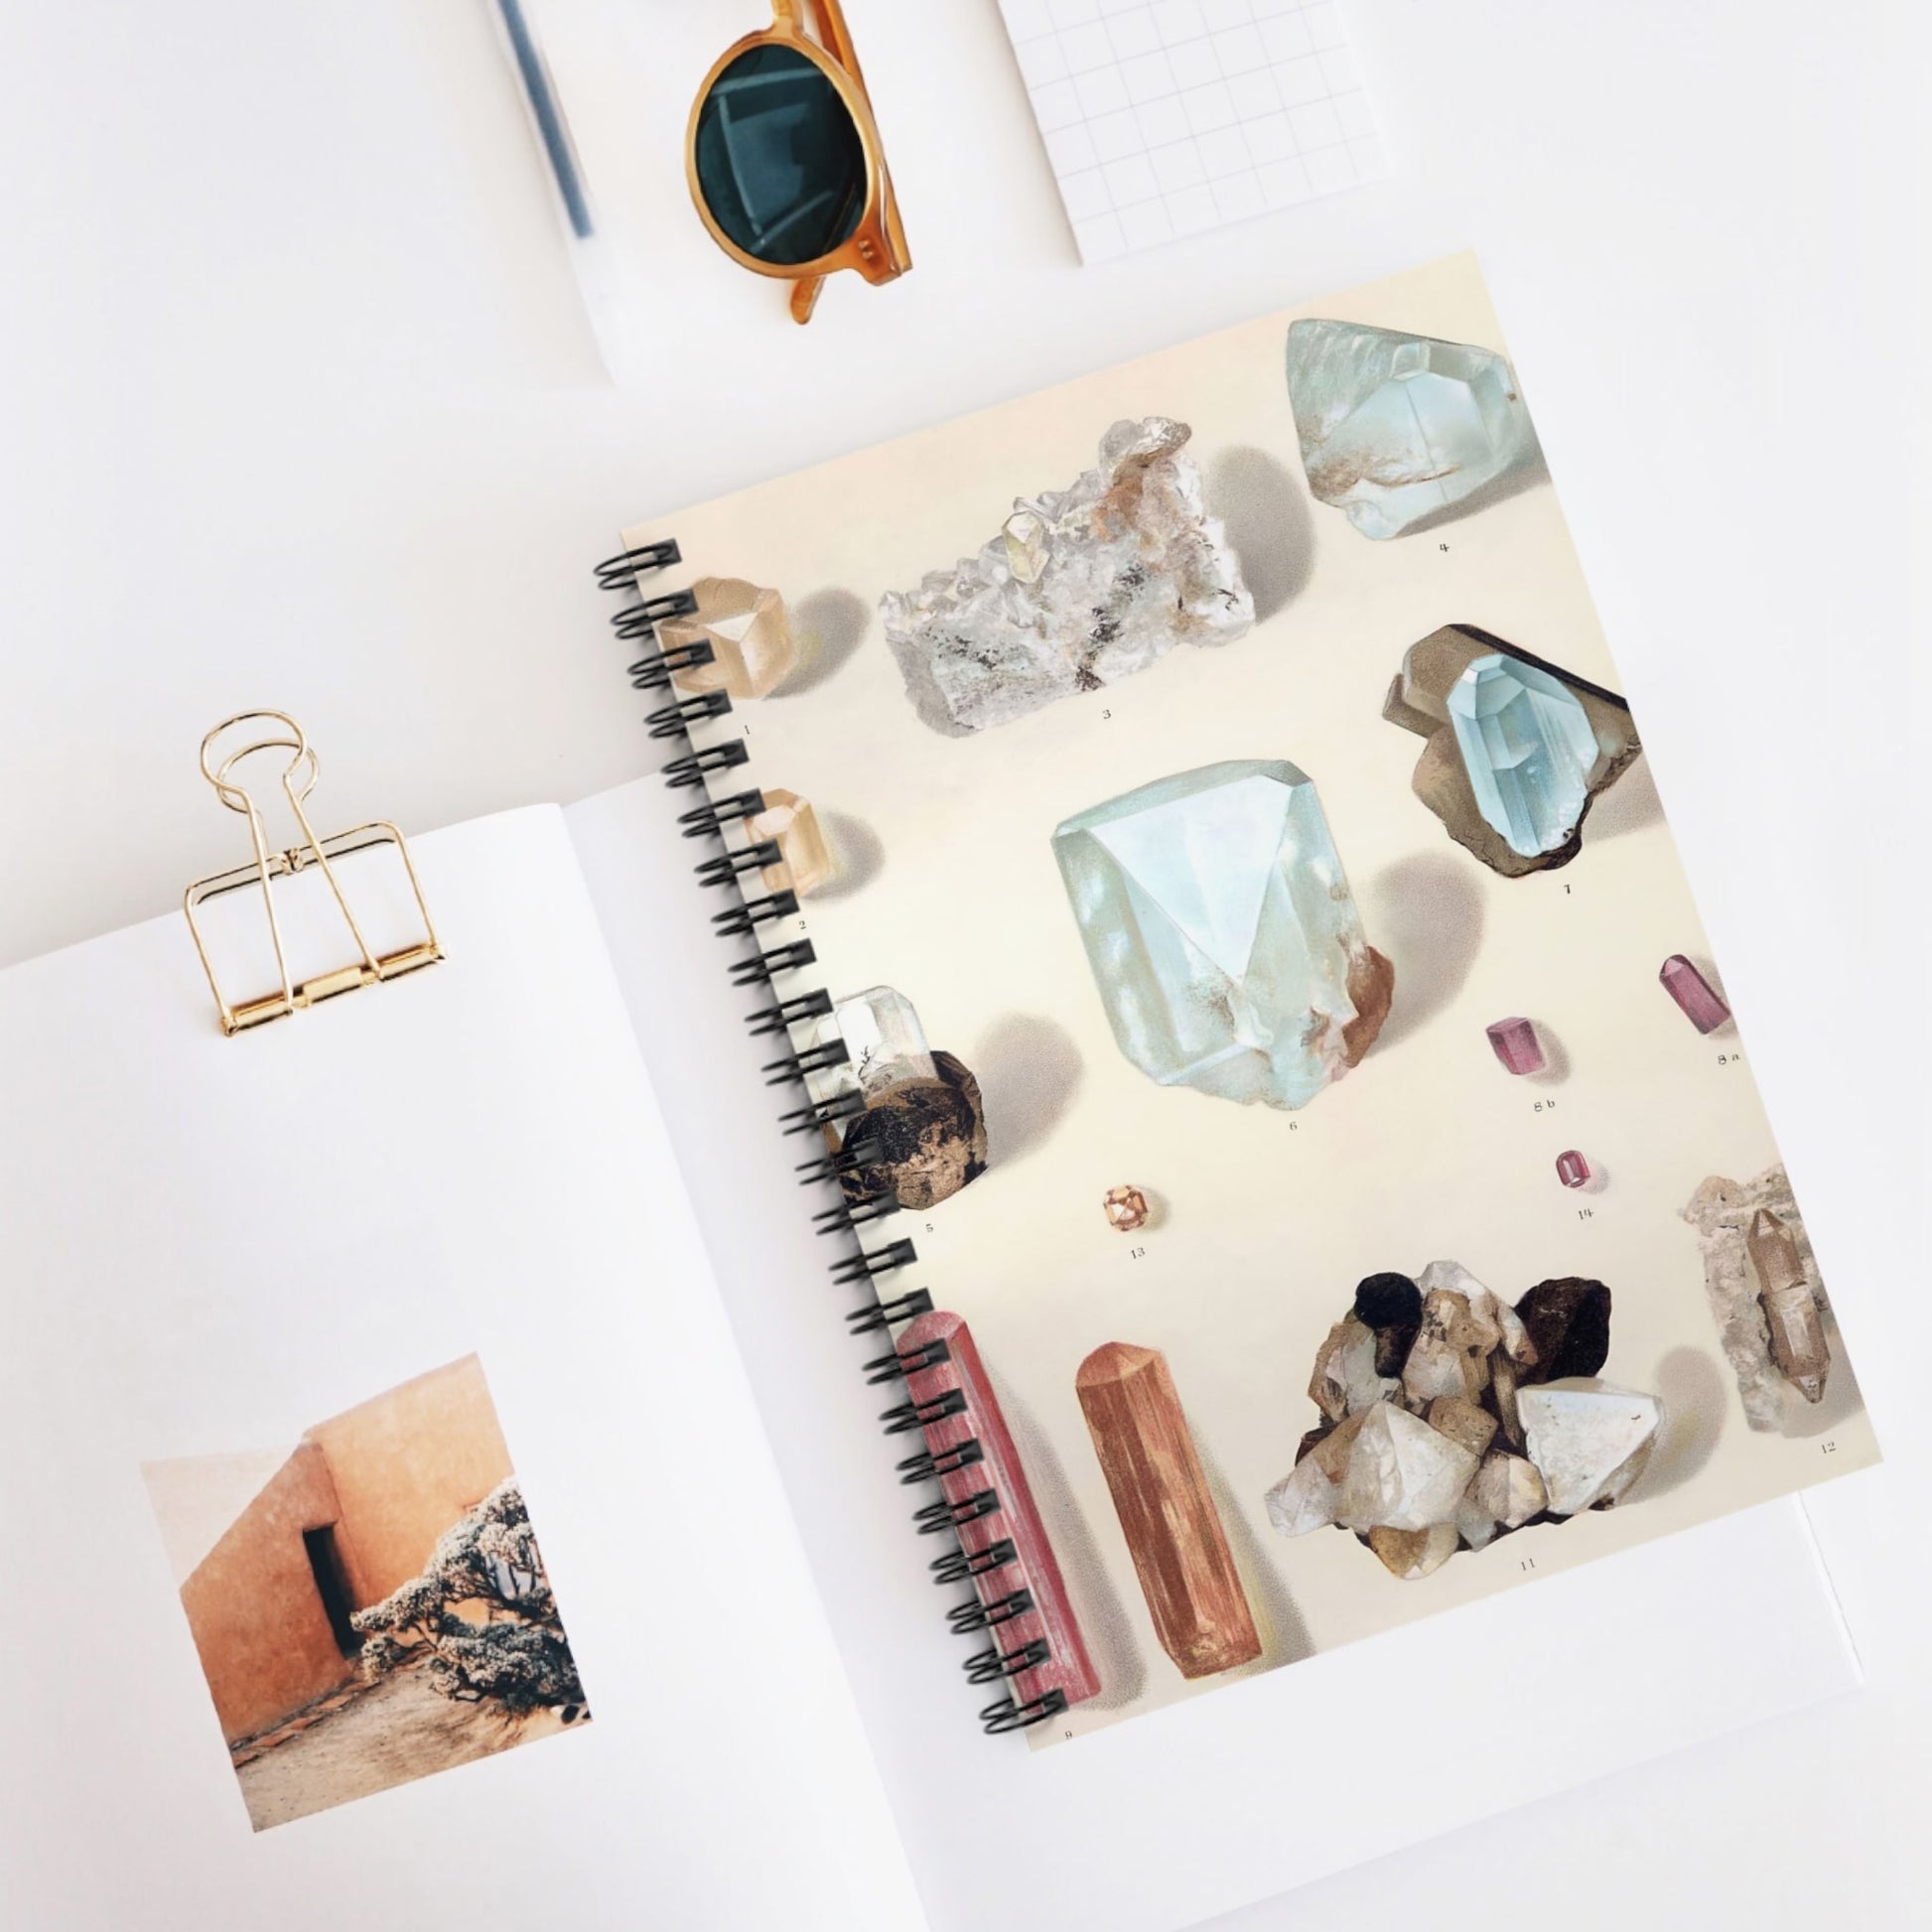 Vintage Crystals and Gemstones Spiral Notebook Displayed on Desk